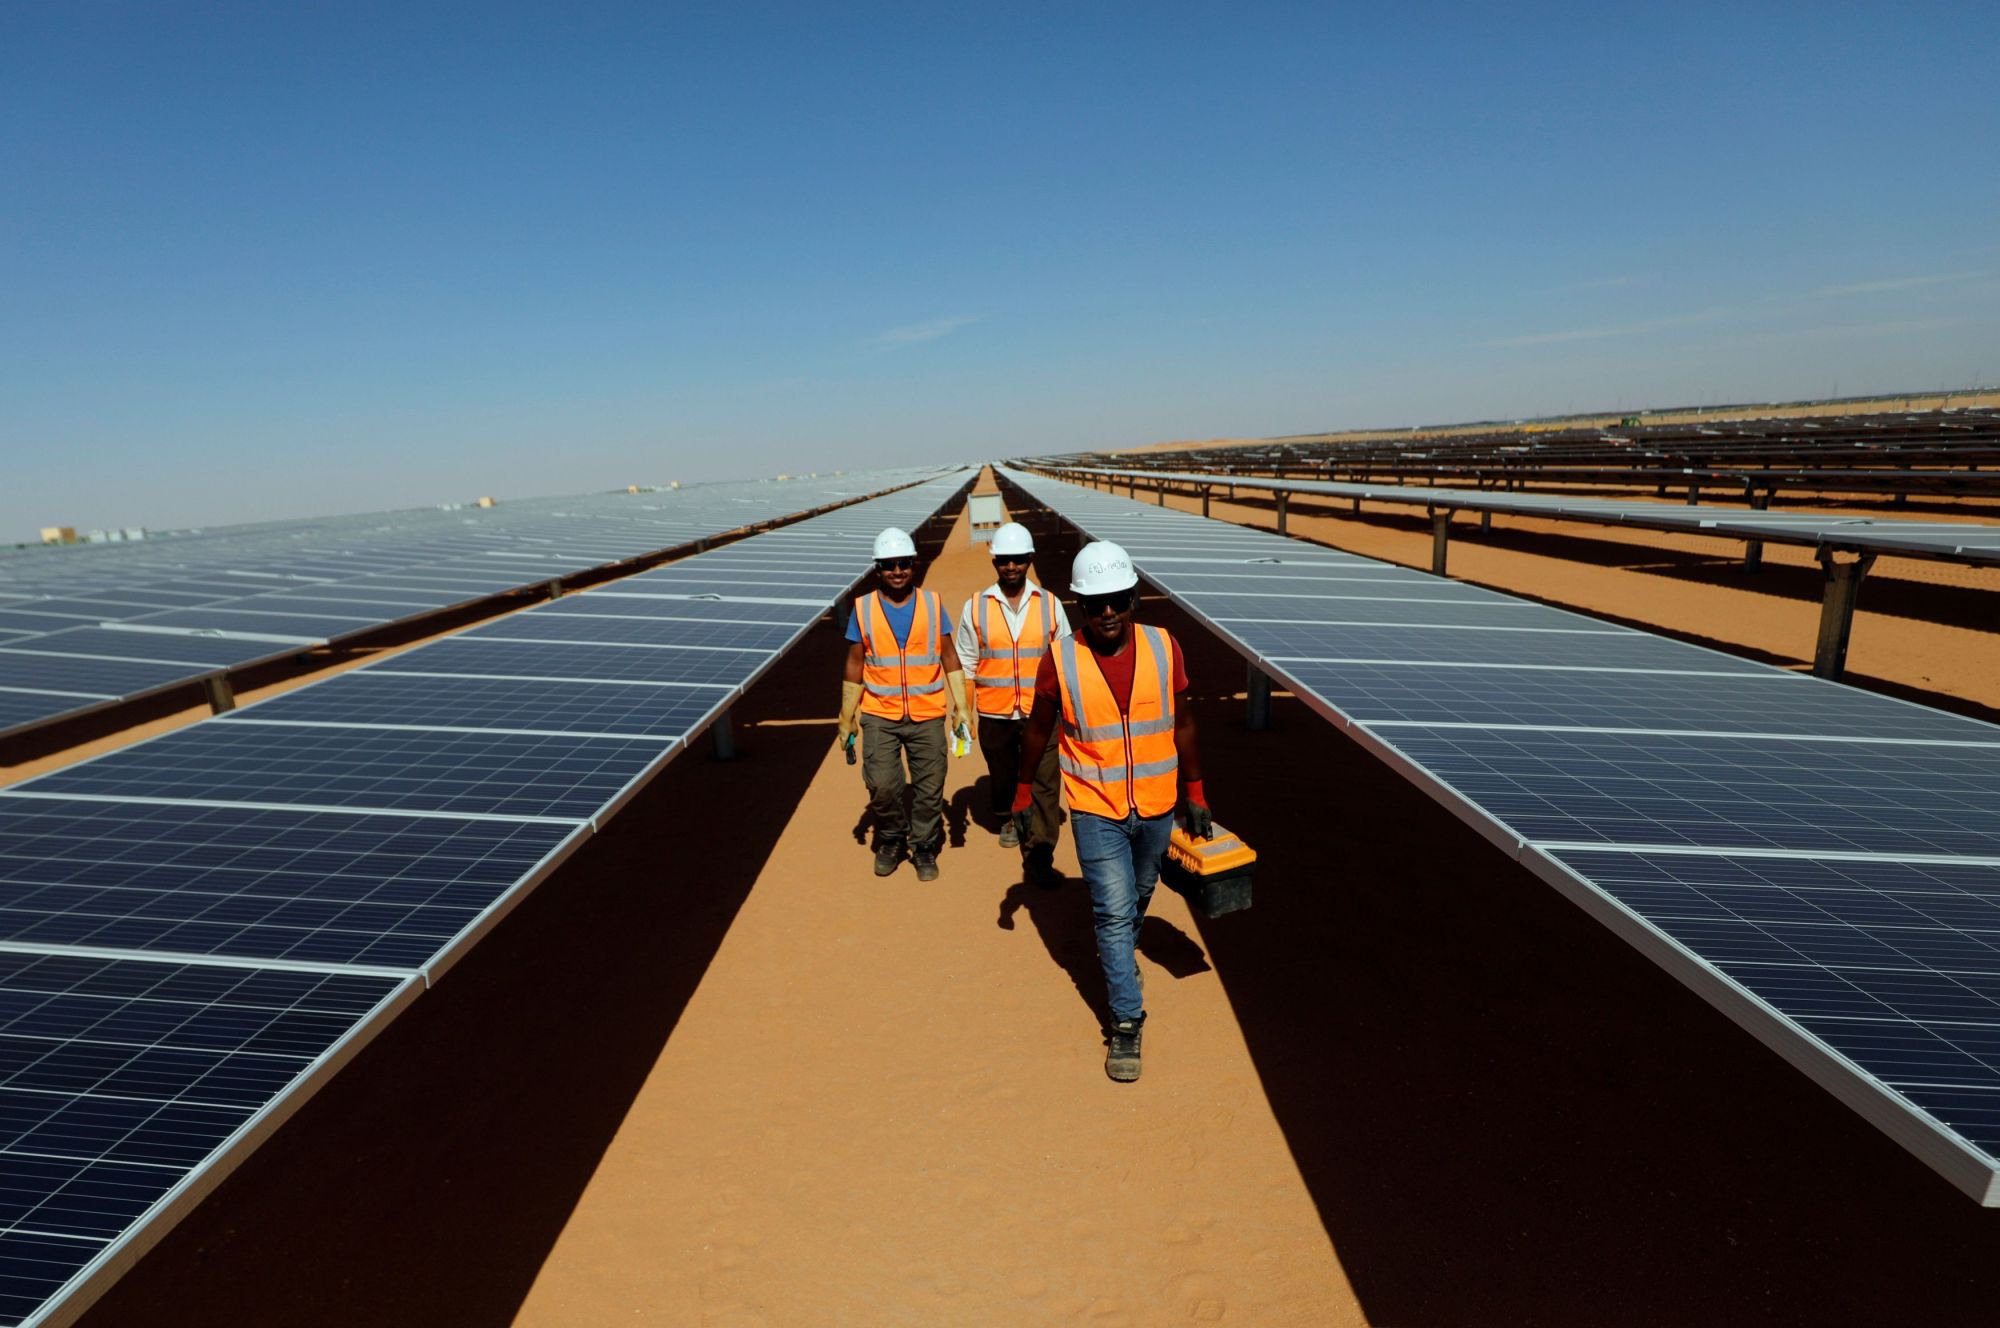 مجمع بنبان للطاقة الشمسية في مصر أحد أبرز مشروعات الطاقة المتجددة بمصر